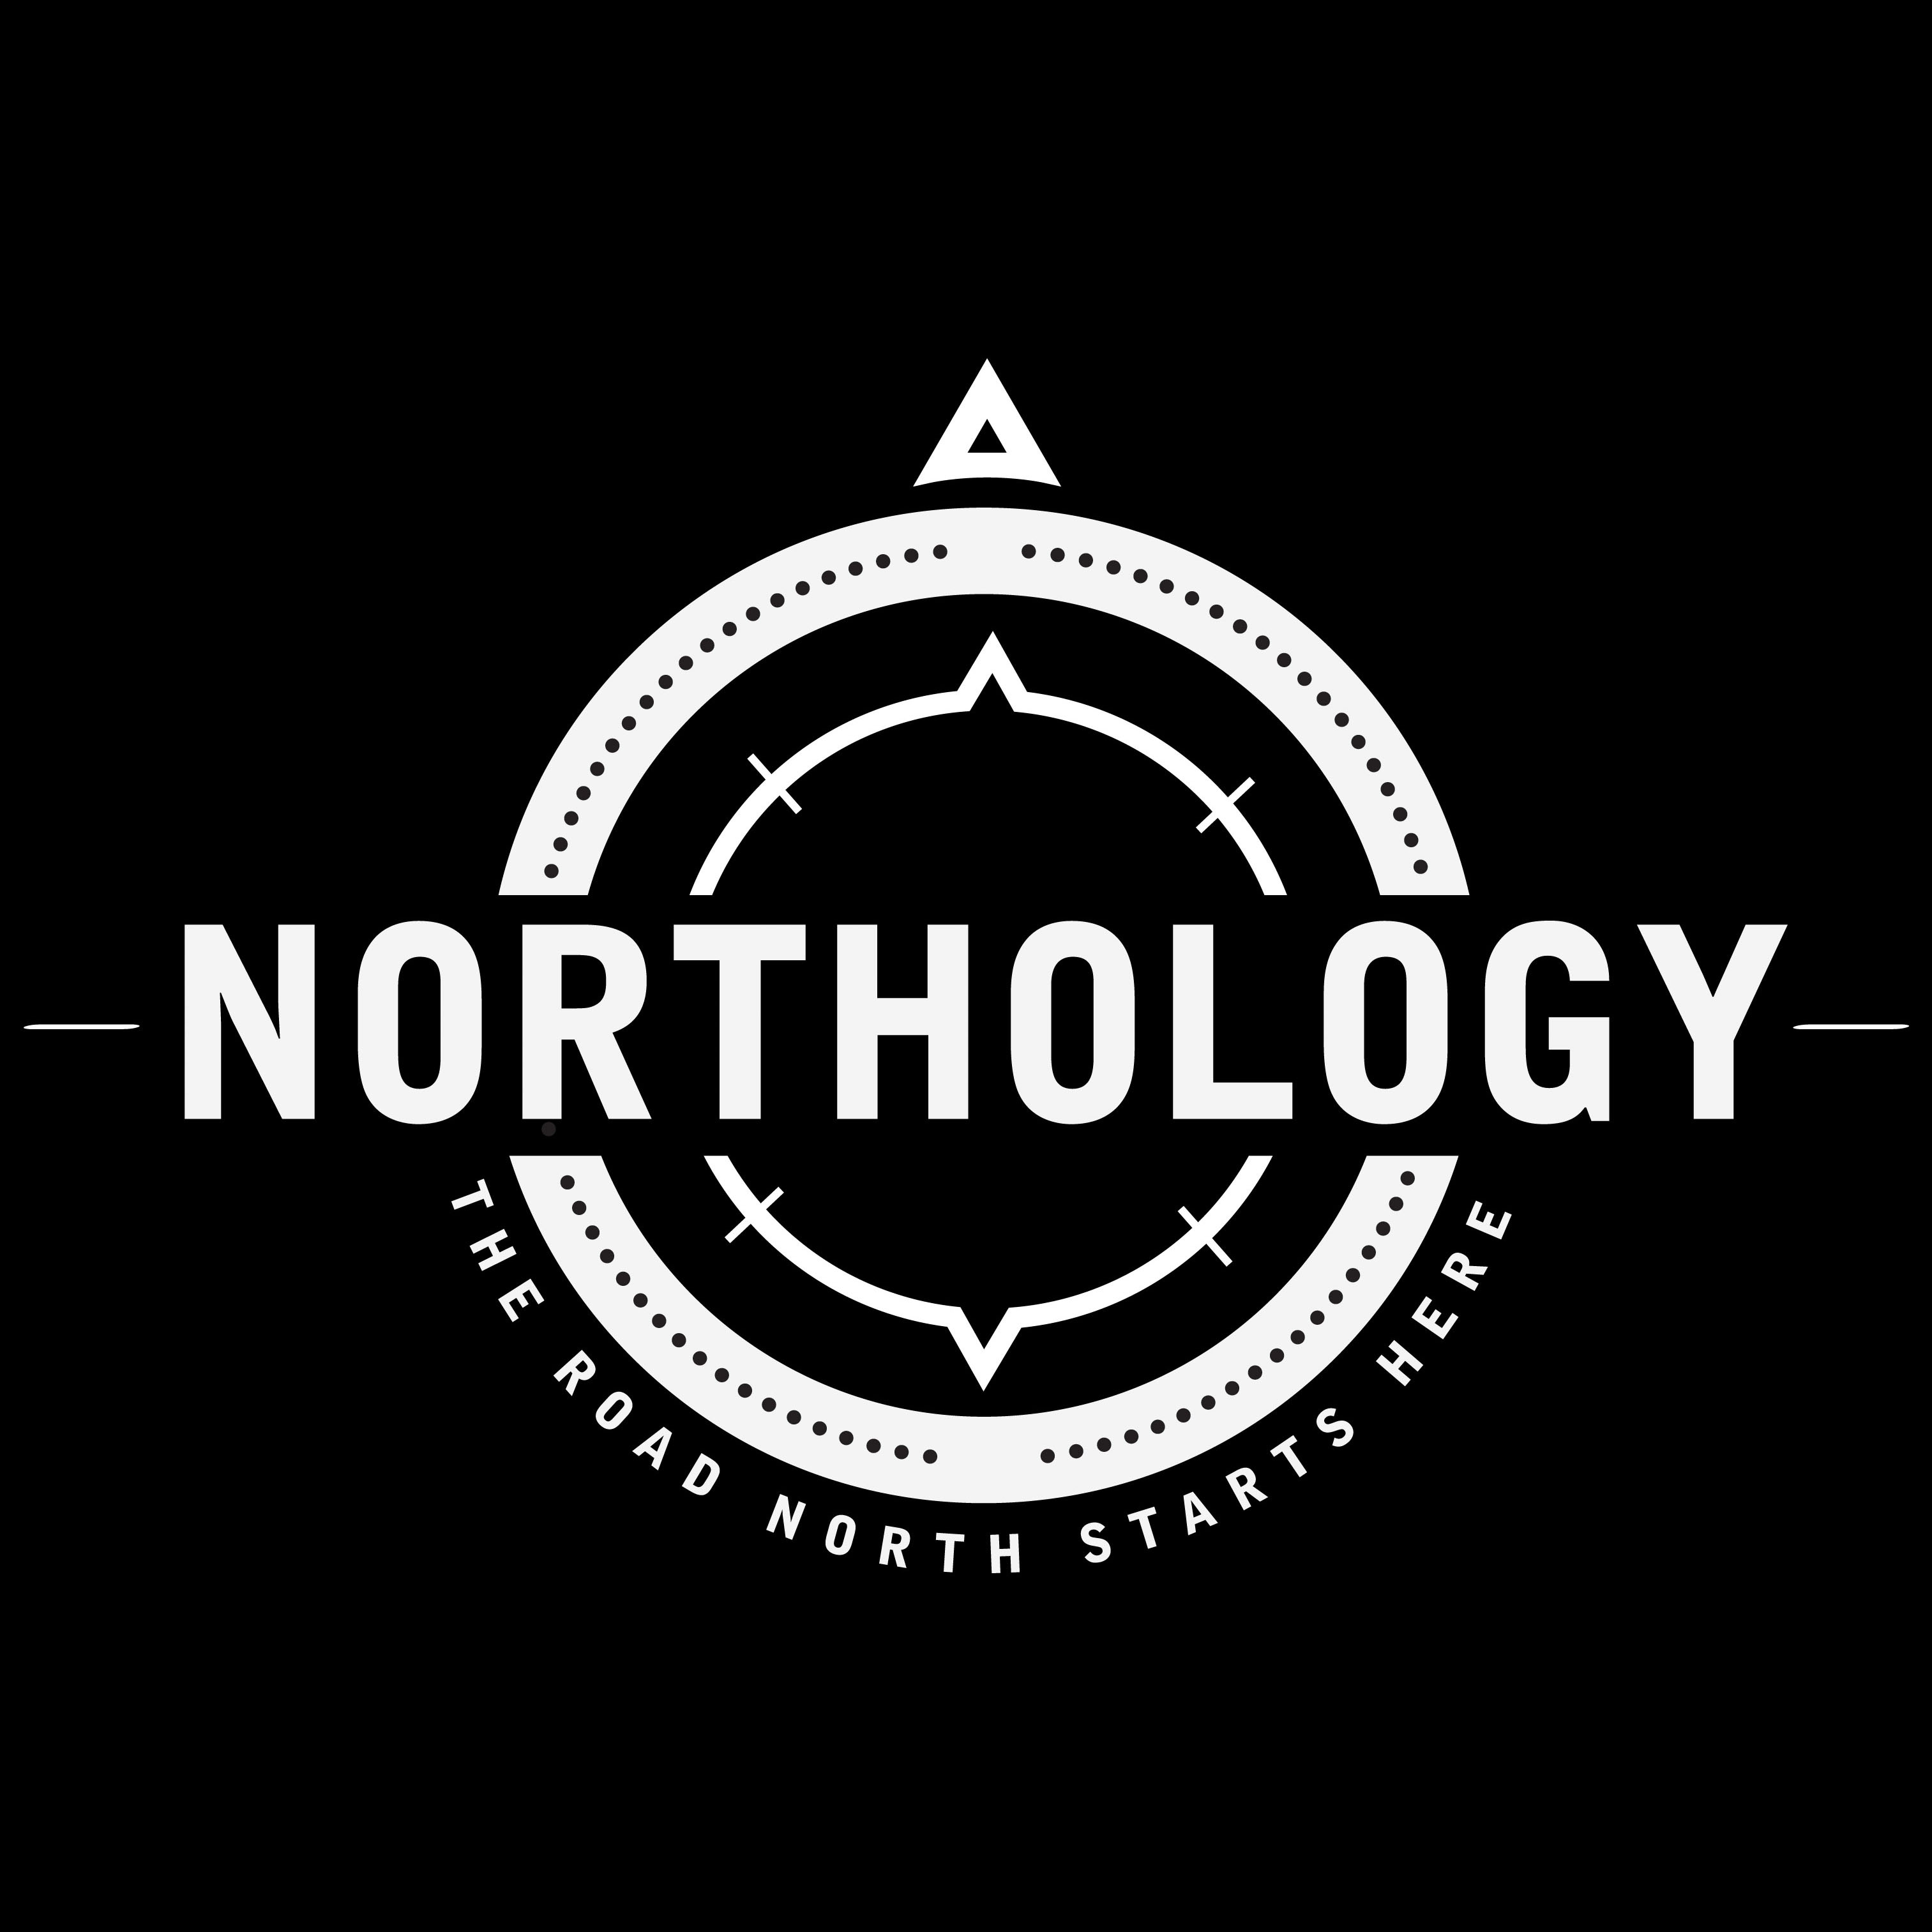 Northology